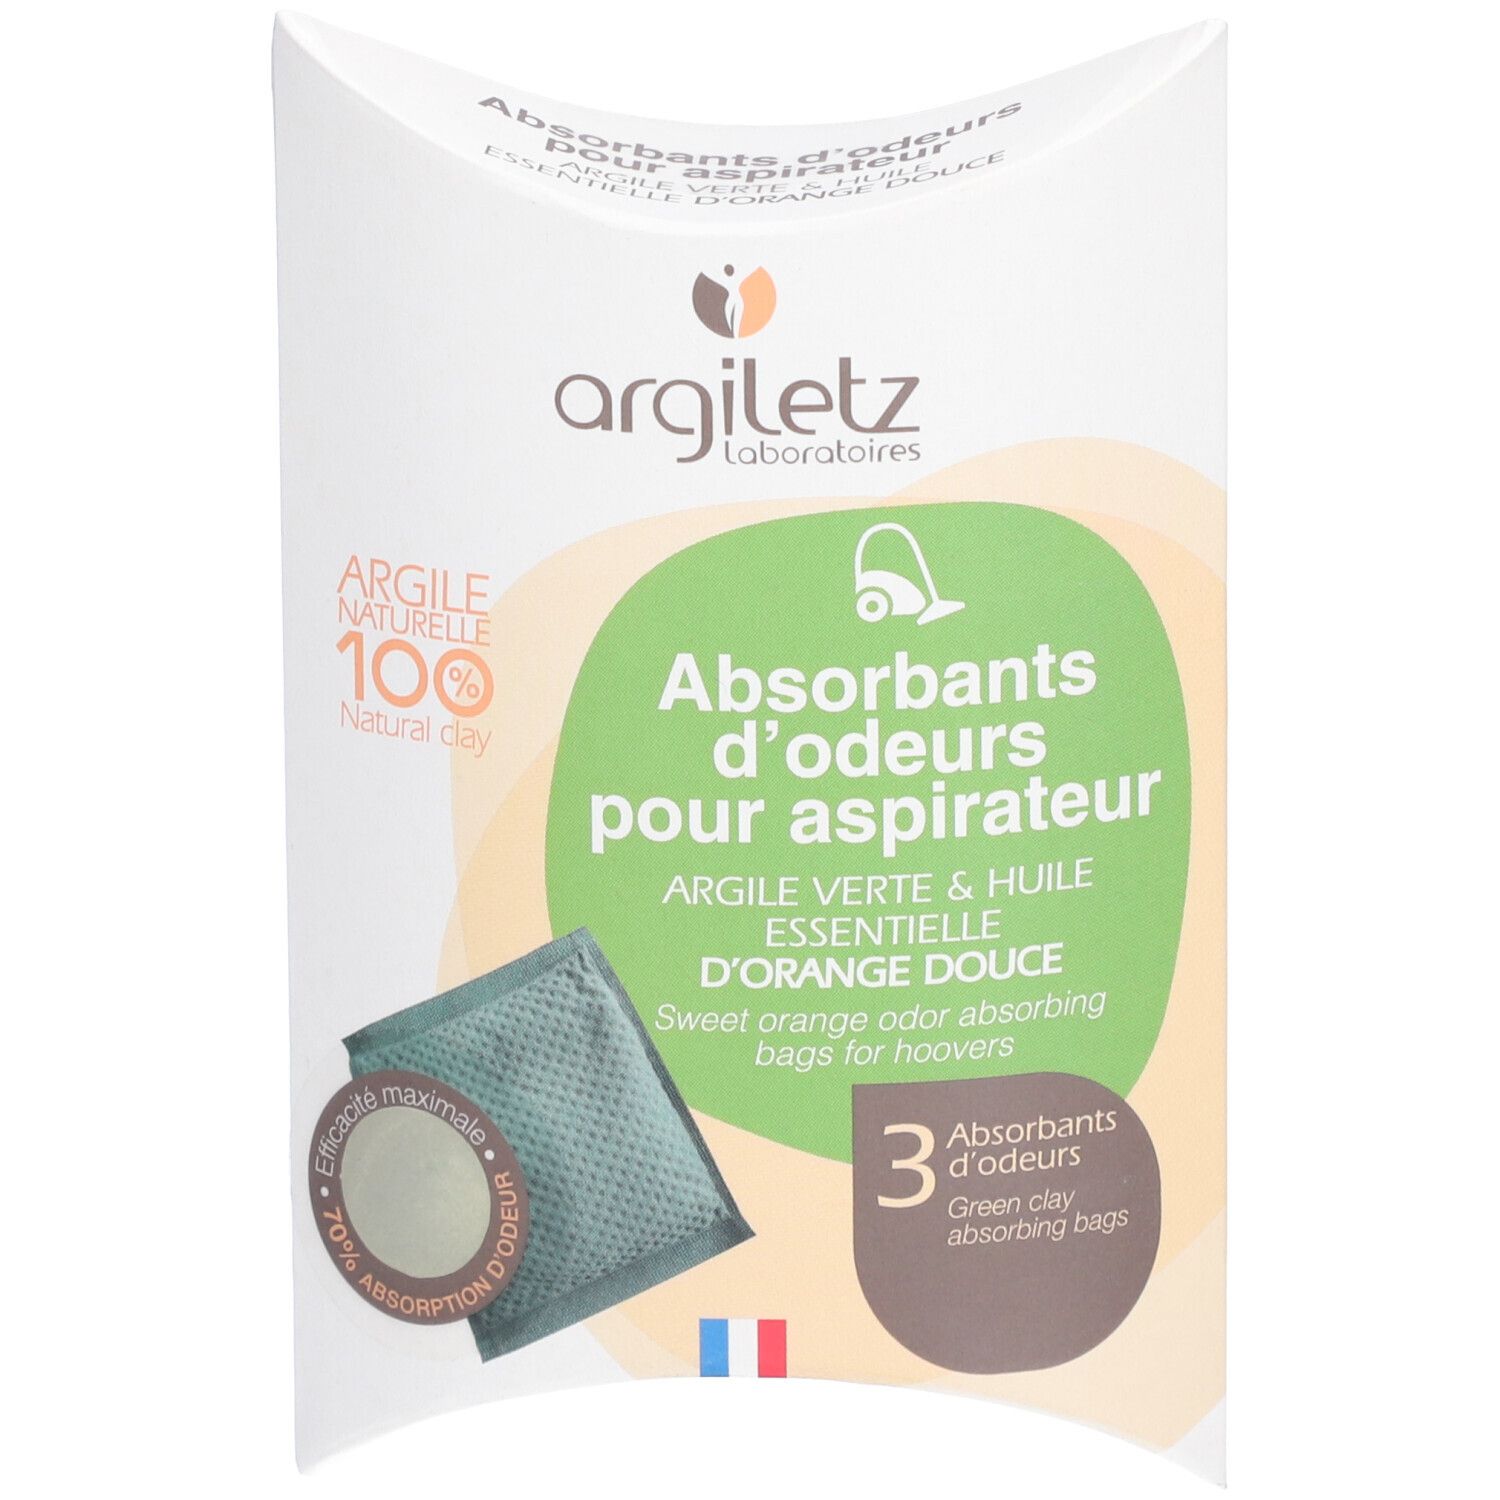 Argiletz Absorbant d’odeur pour aspirateurs parfum orange douce